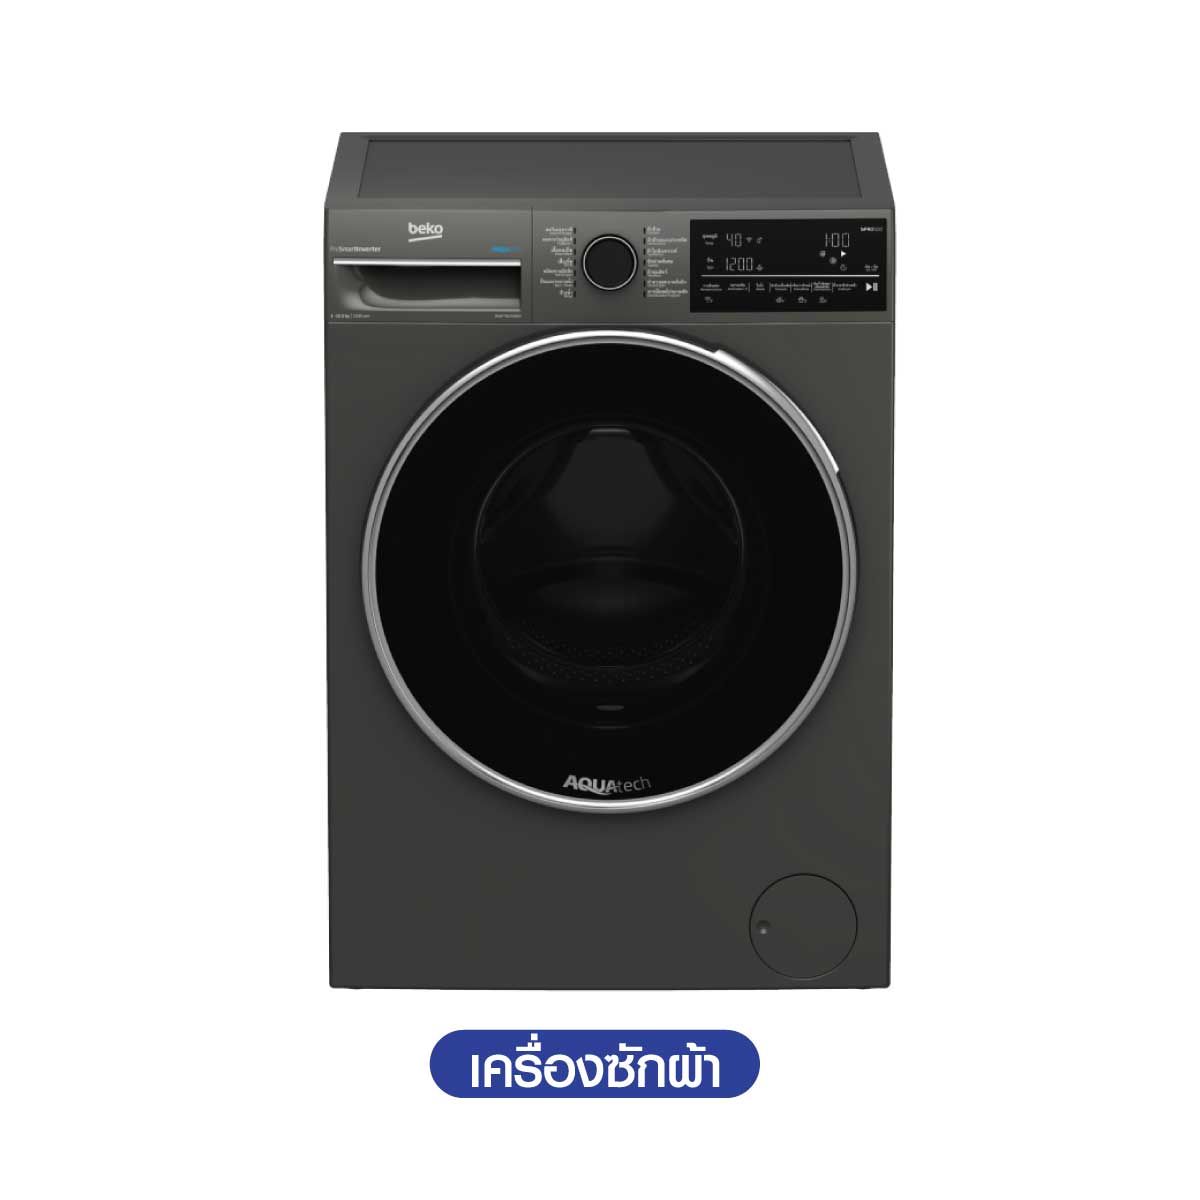 BEKO เครื่องซักผ้าฝาหน้า10.5Kg. Aqutech Wifi สีดำ รุ่น WFT8105485M